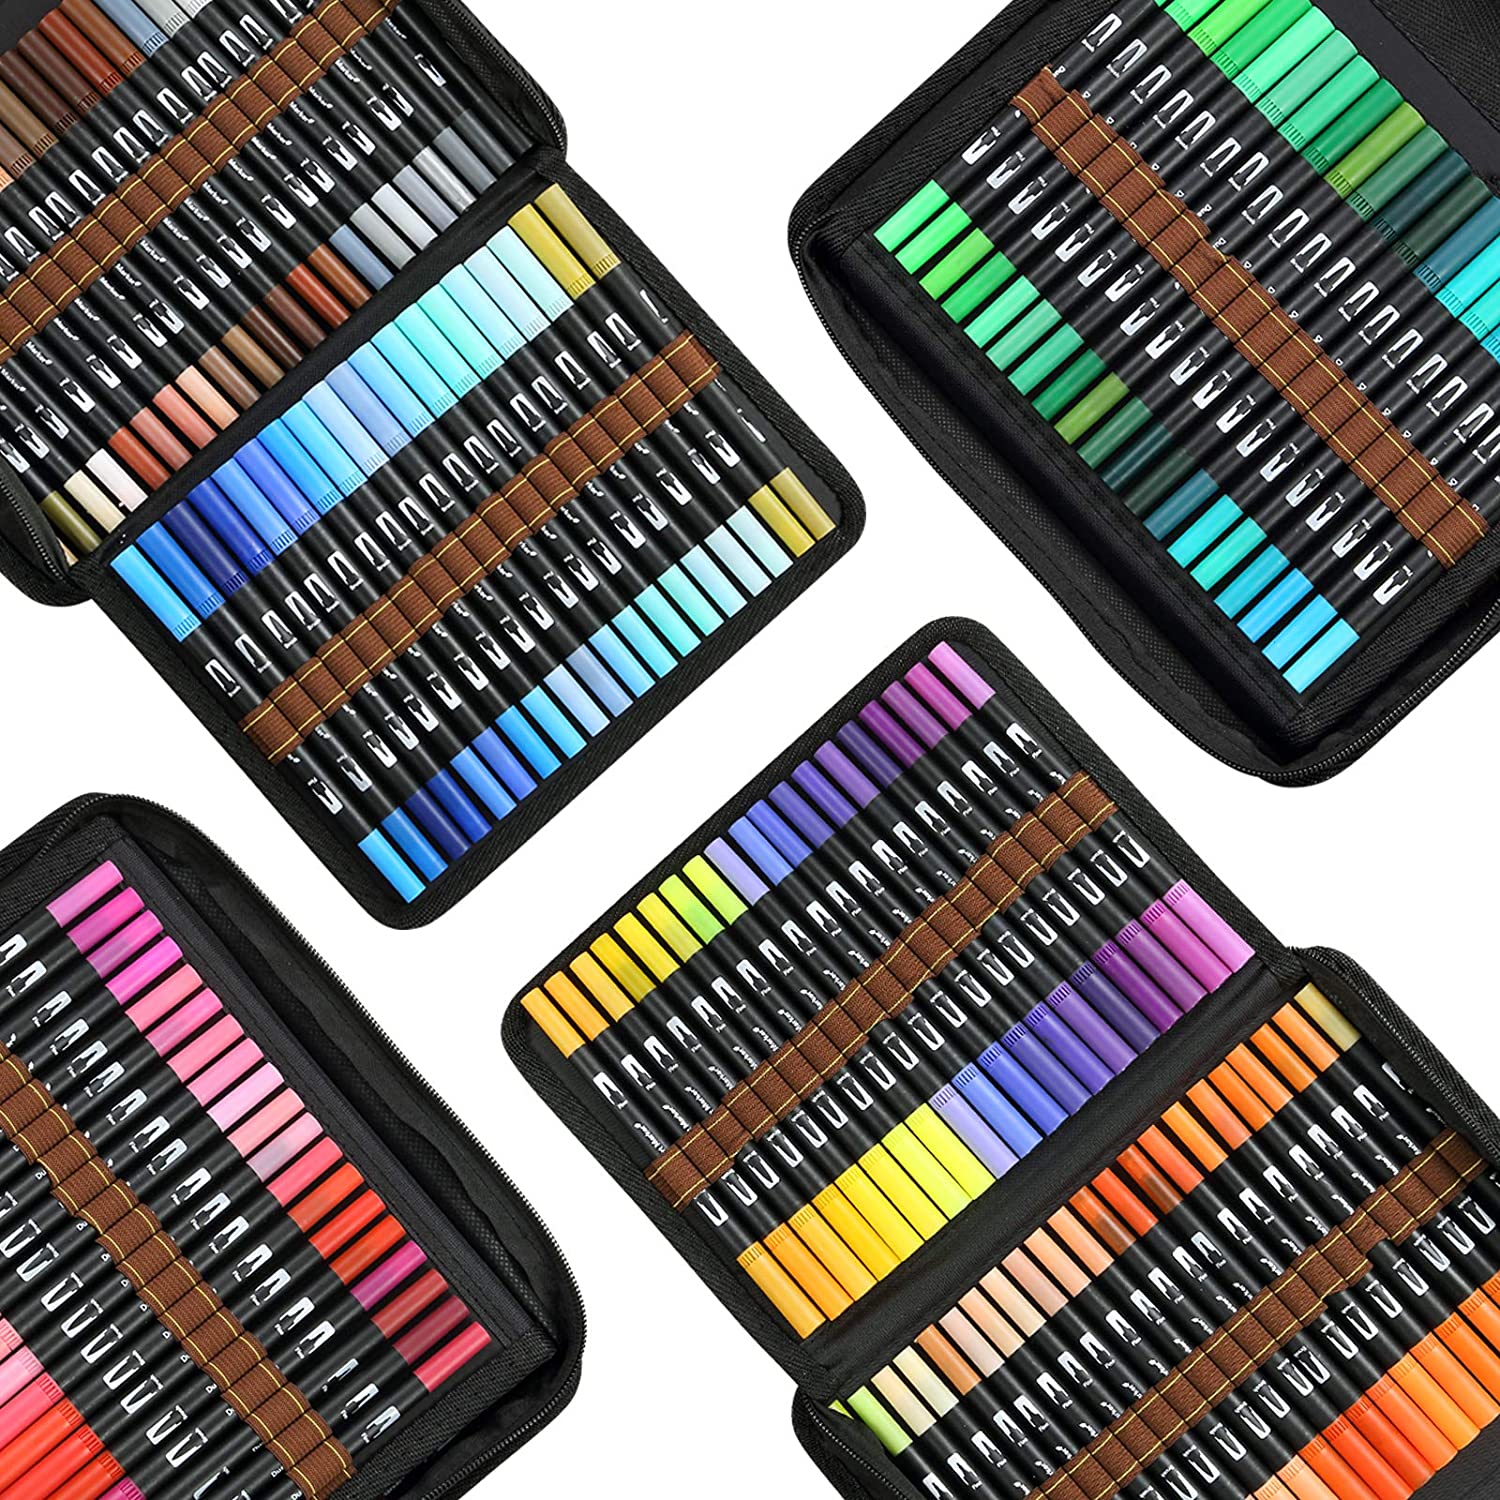 24.12.34/48/72/100/120 Farben Dual Tipps Aquarell Pinselstifte Malvorlagen für Kalligraphie Zeichnen Skizzierfärben